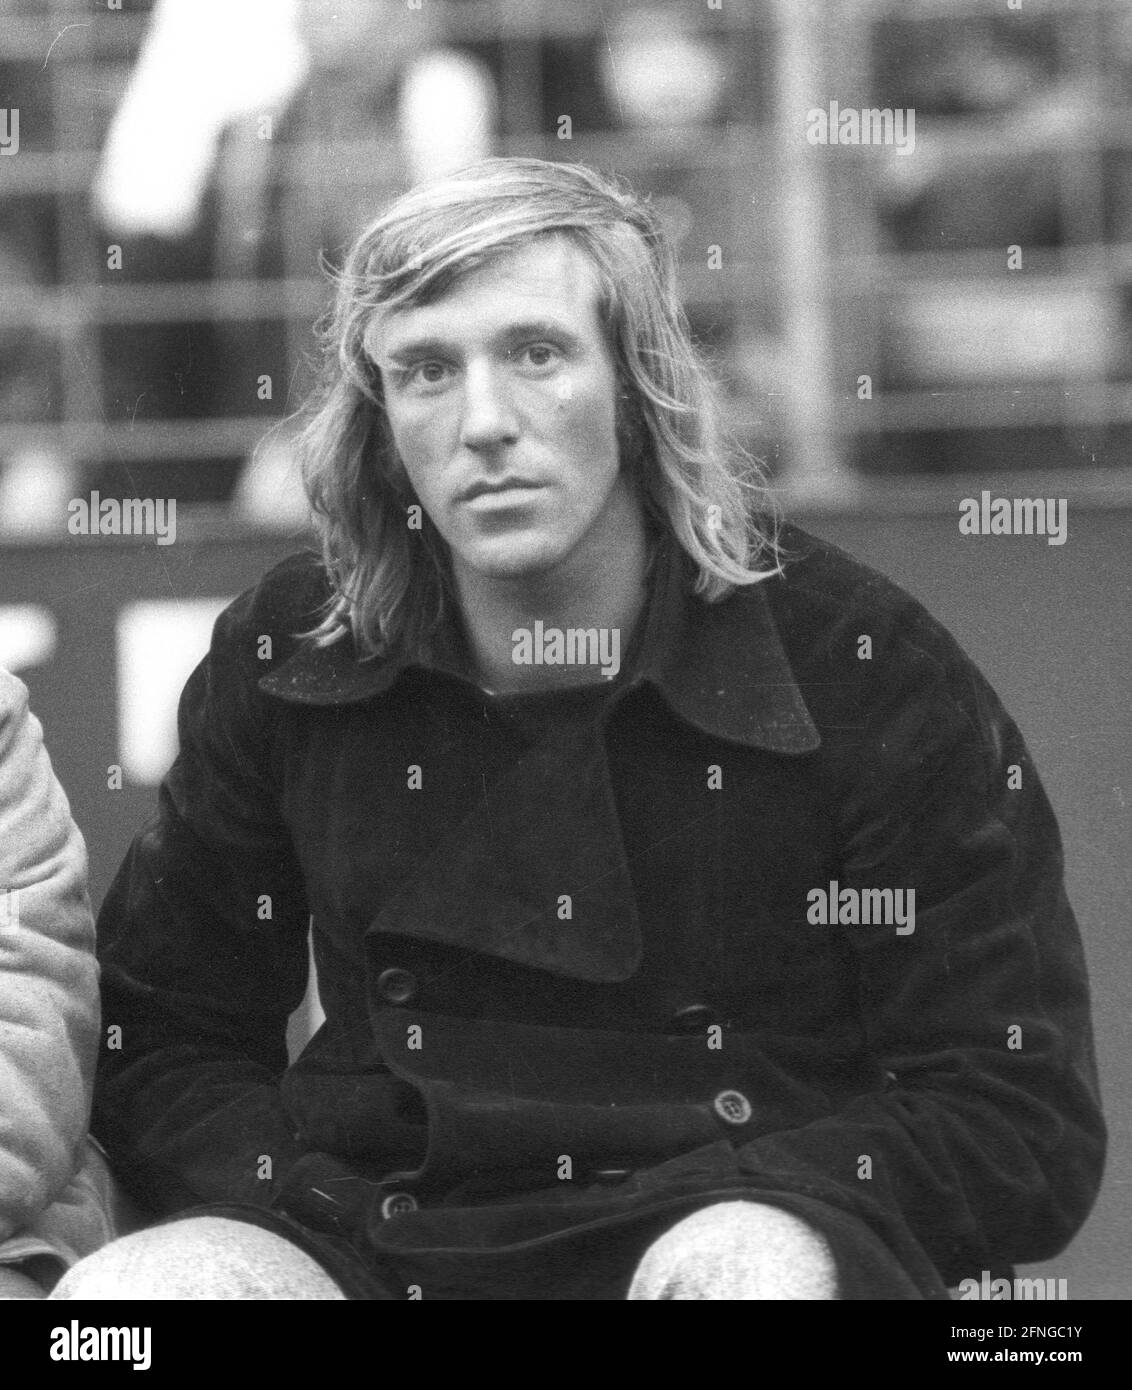 Fortuna Düsseldorf - Borussia Mönchengladbach am 17.02.1973 Günter Netzer in Zivile Kleidung auf der Bank [automatisierte Übersetzung] Stockfoto